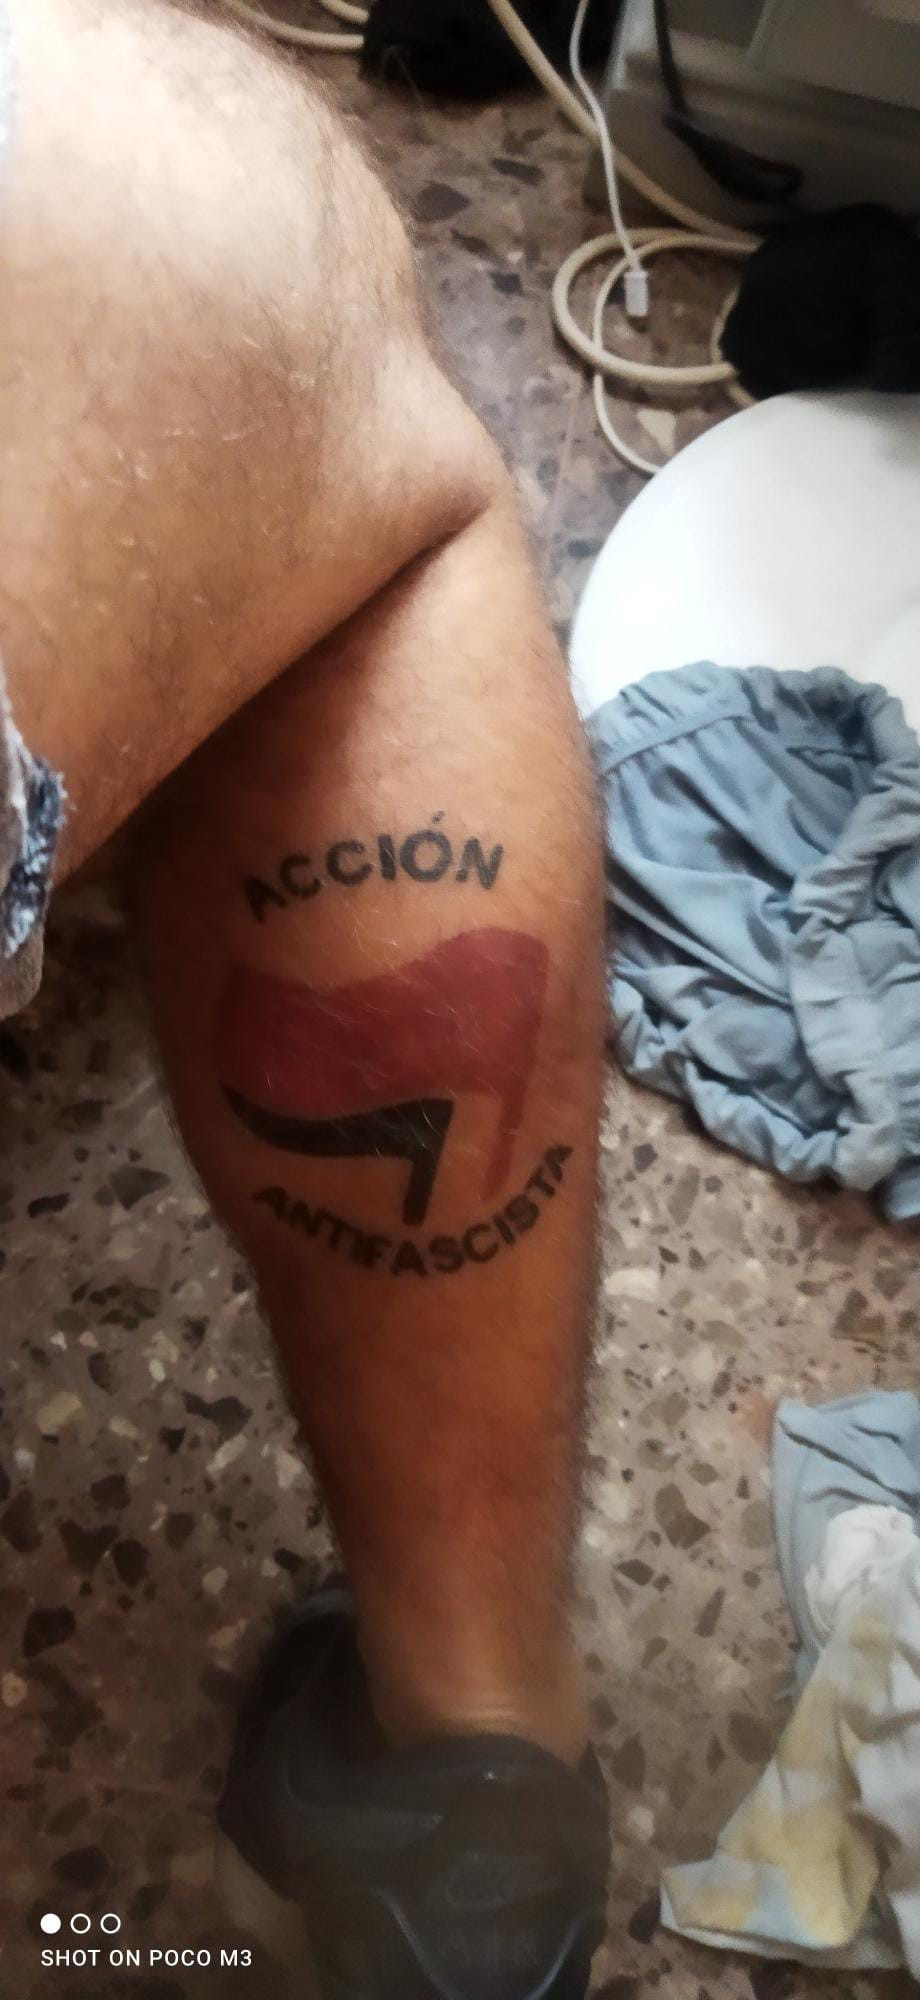 accion antifascista tattoo